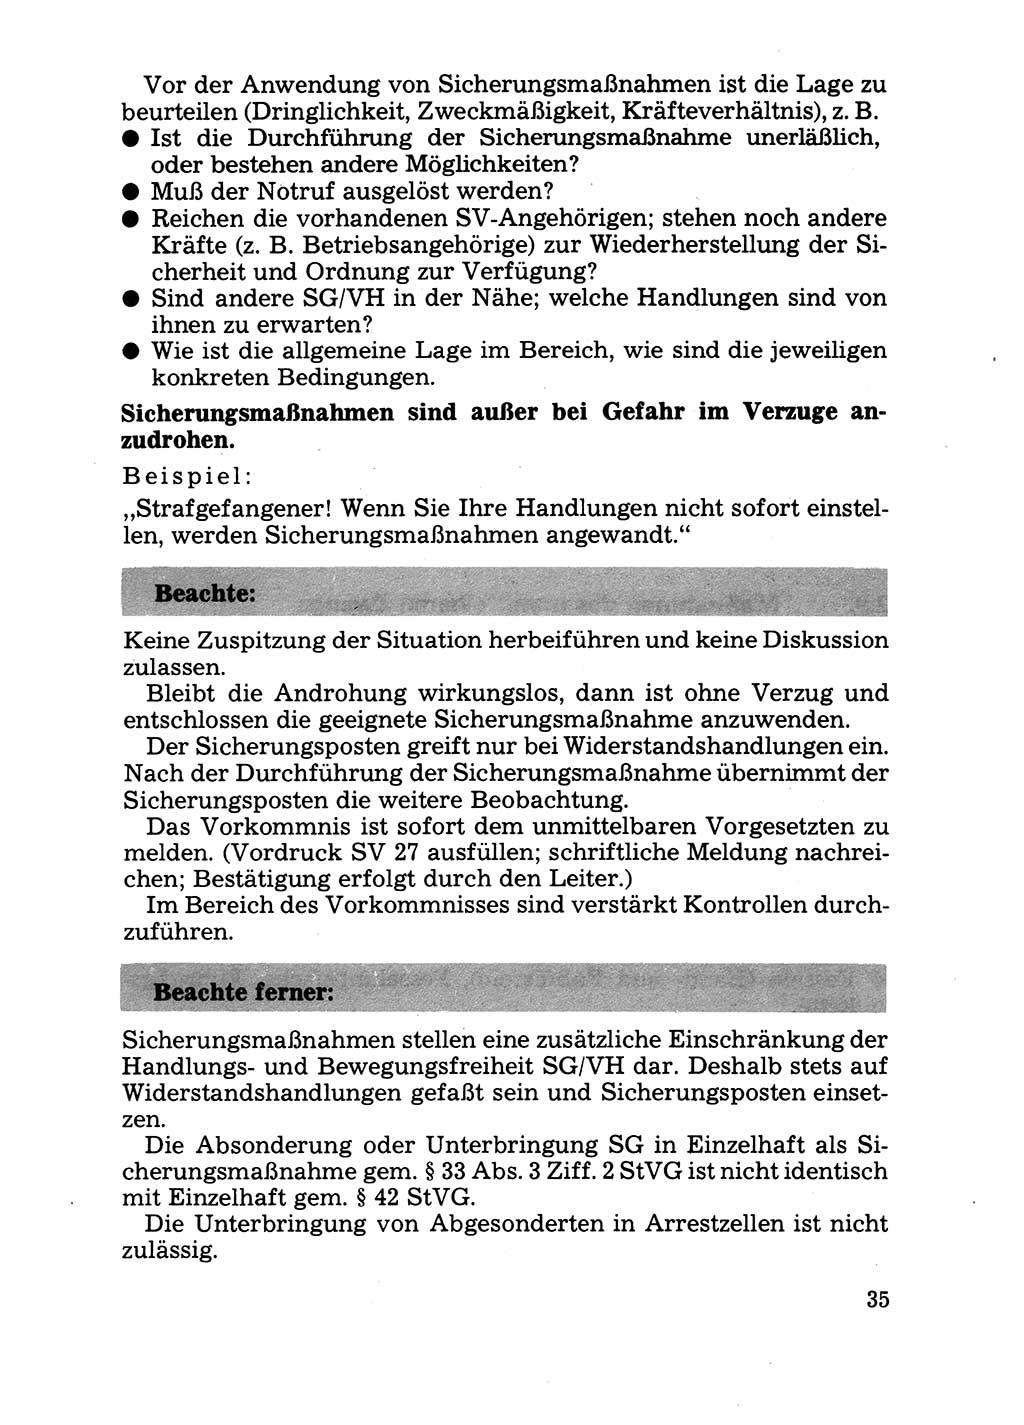 Handbuch für operative Dienste, Abteilung Strafvollzug (SV) [Ministerium des Innern (MdI) Deutsche Demokratische Republik (DDR)] 1981, Seite 35 (Hb. op. D. Abt. SV MdI DDR 1981, S. 35)